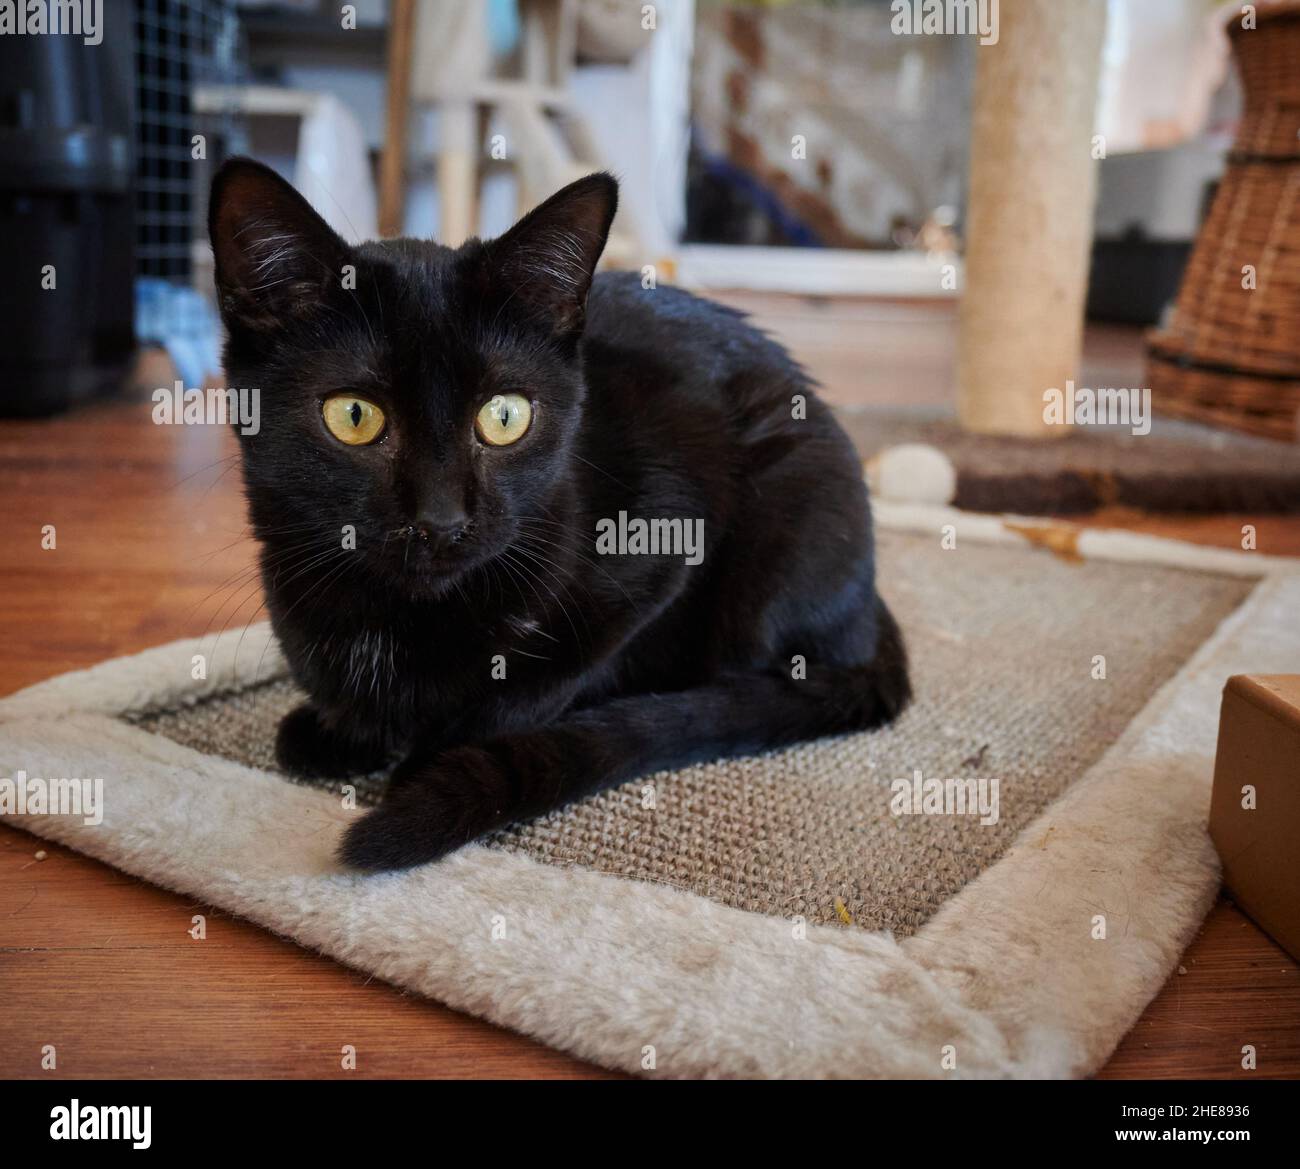 Gatto nero domestico carino con gli occhi gialli grandi che fissano ad una distanza mentre si trova su un piccolo tappeto Foto Stock